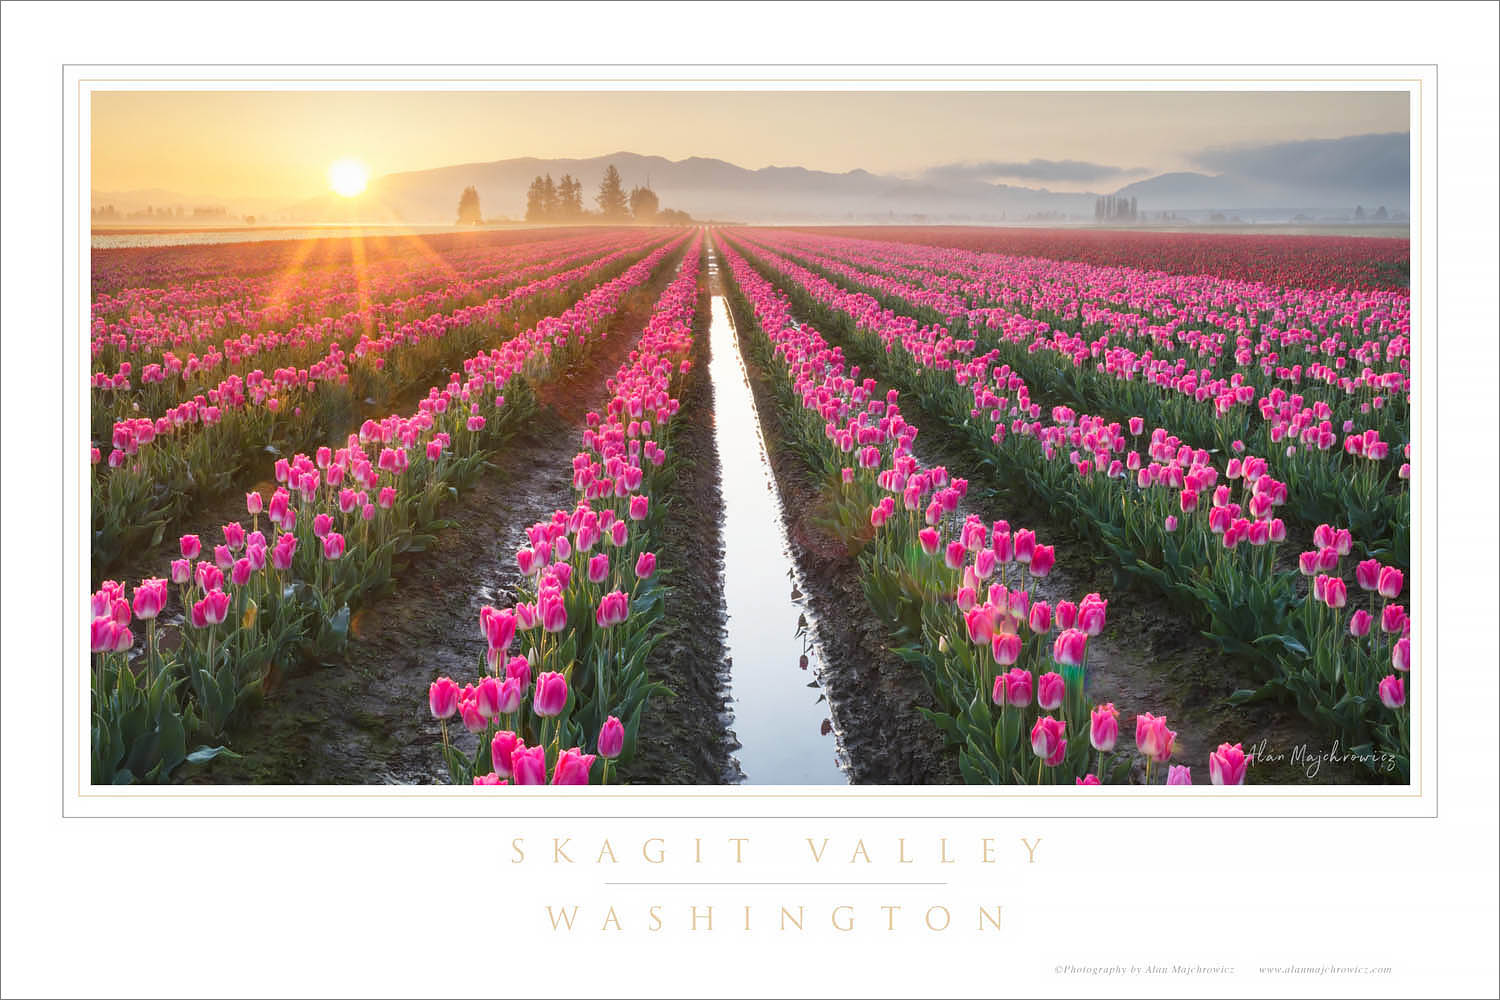 Skagit Valley Tulips Washington